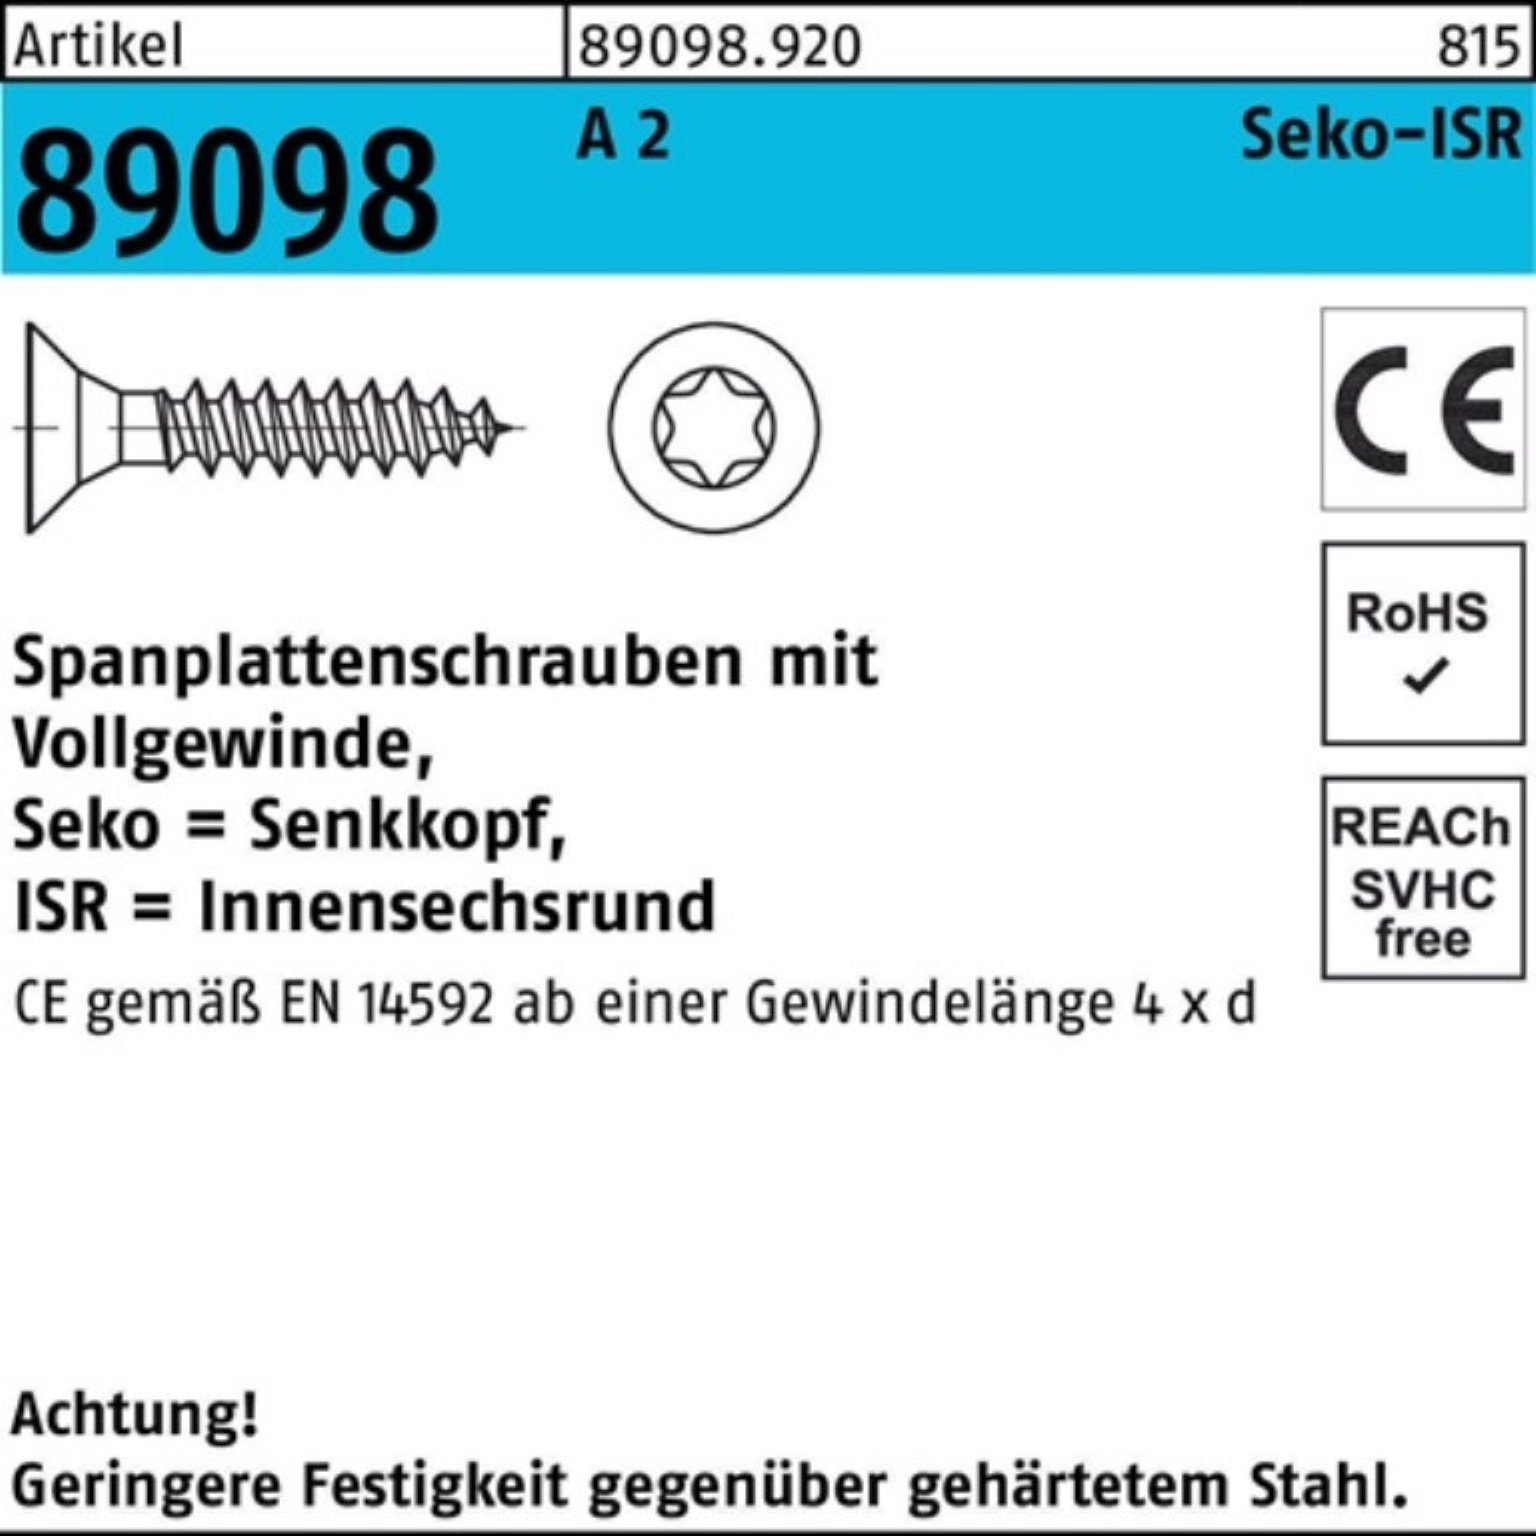 Reyher Spanplattenschraube 1000er Pack Spanplattenschraube R 89098 SEKO ISR VG 4x 30-T20 A 2 1000